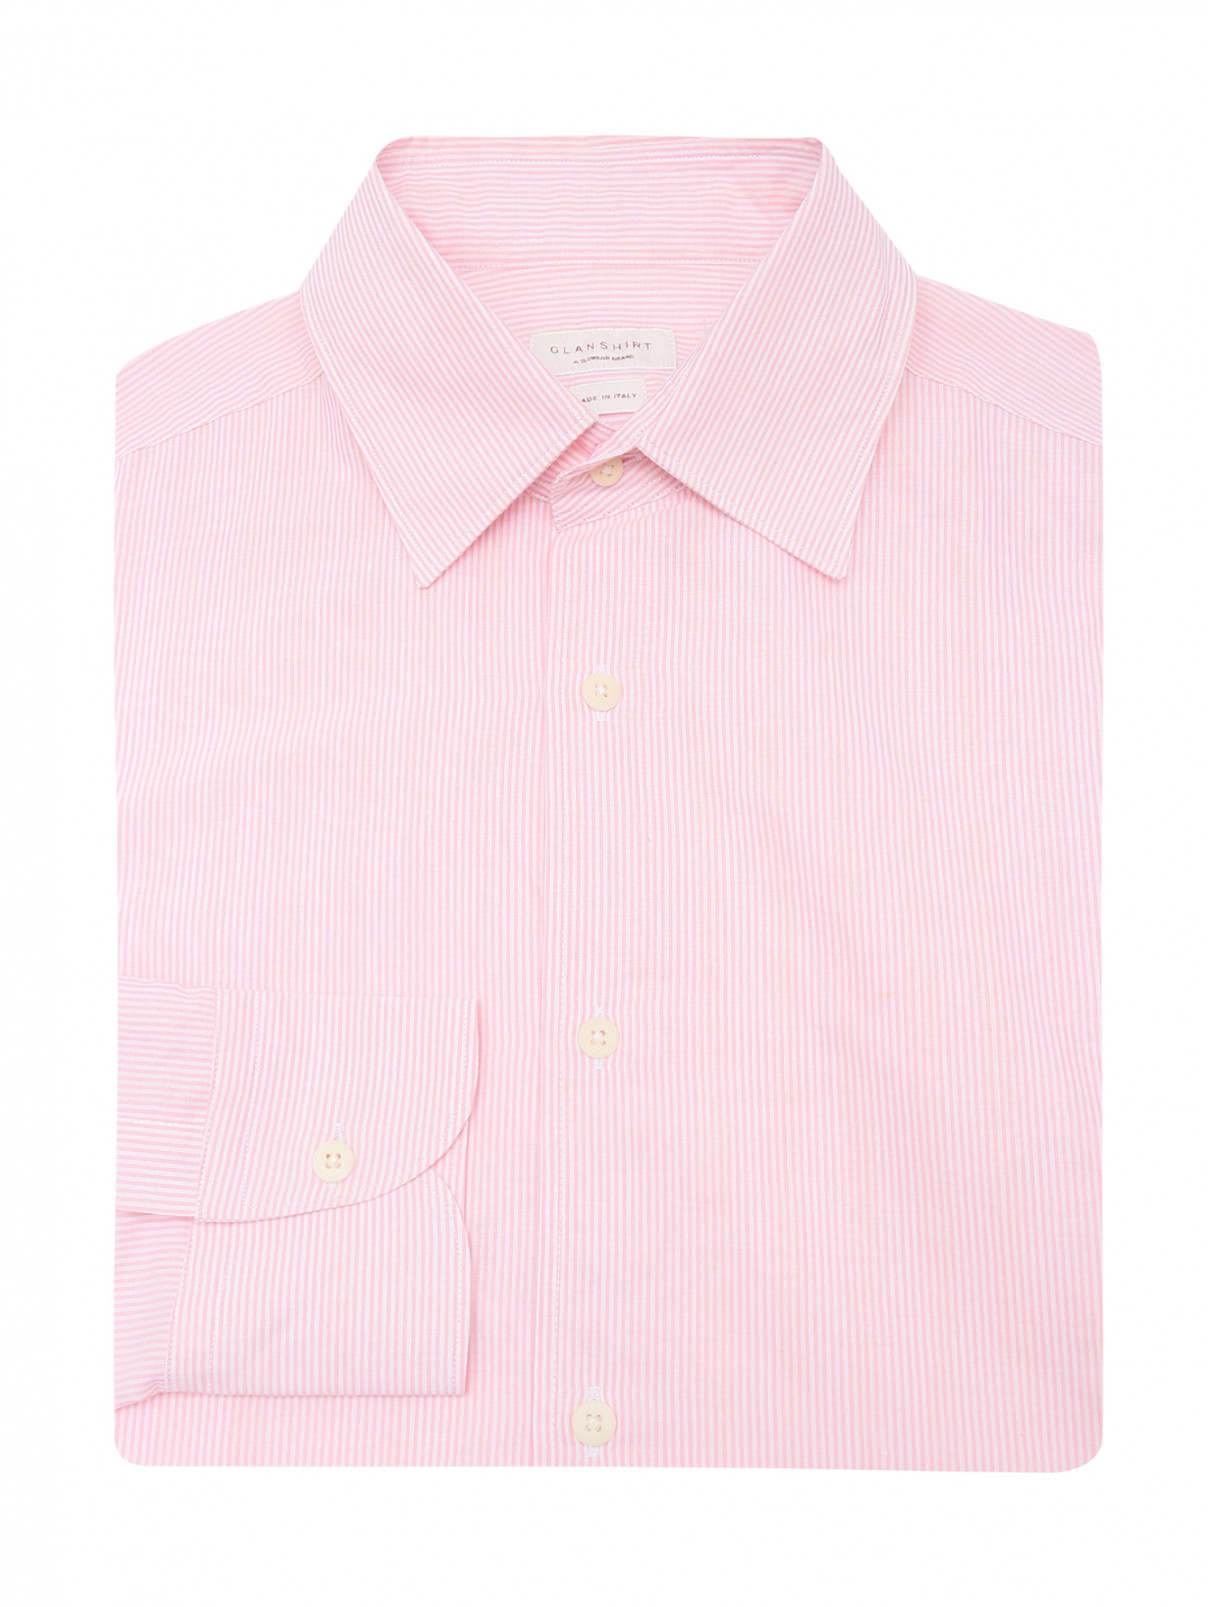 Рубашка из хлопка с узором Glanshirt  –  Общий вид  – Цвет:  Узор